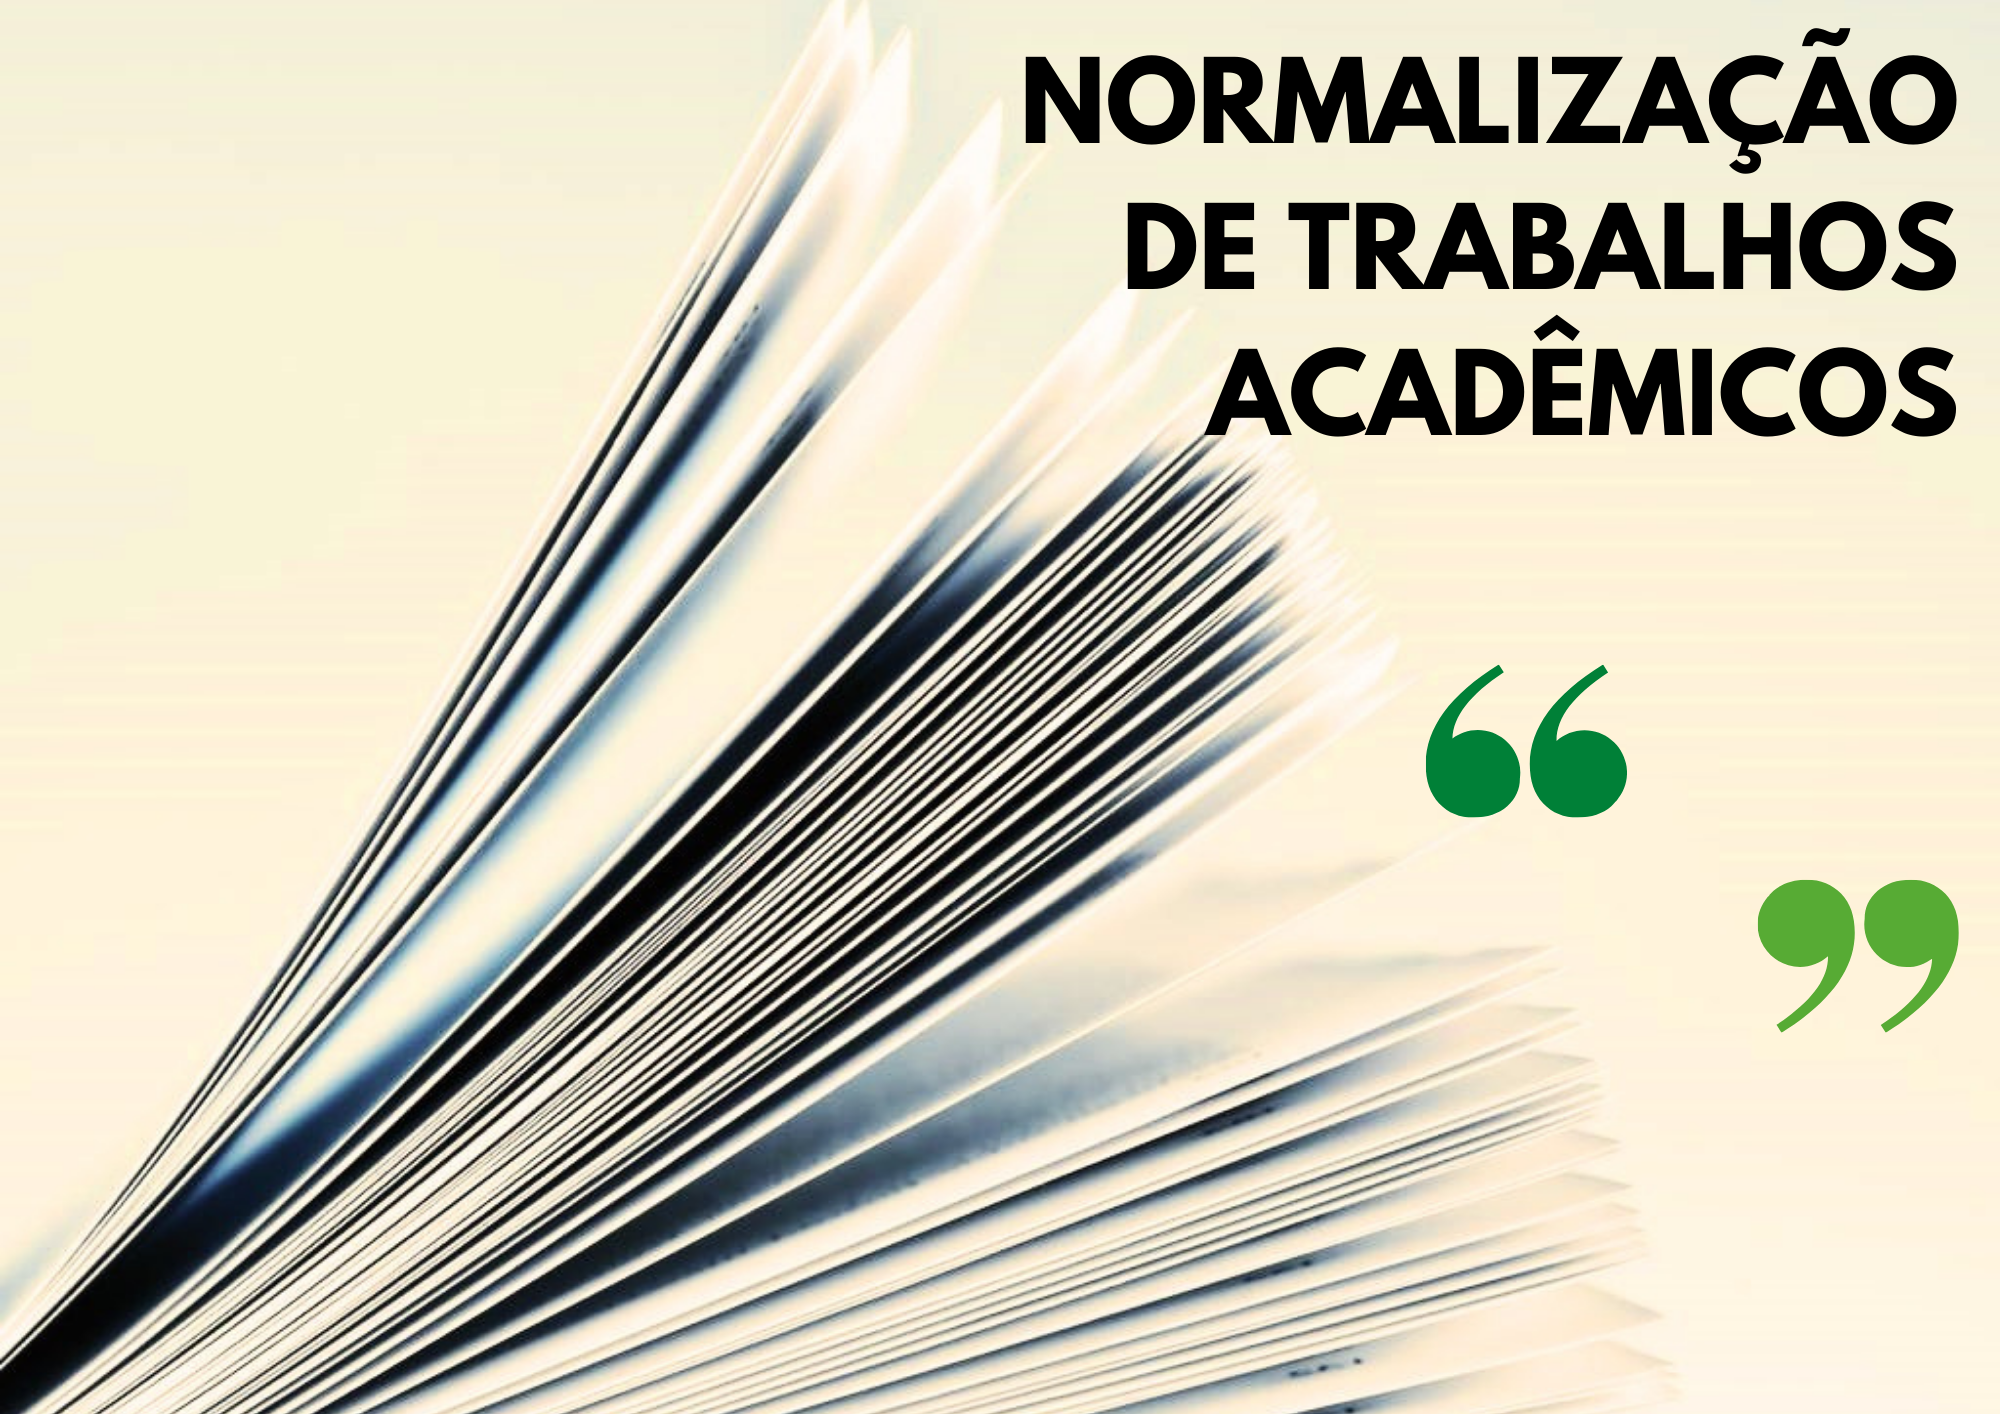 Normalização de trabalhos acadêmicos - Turma 1/2022